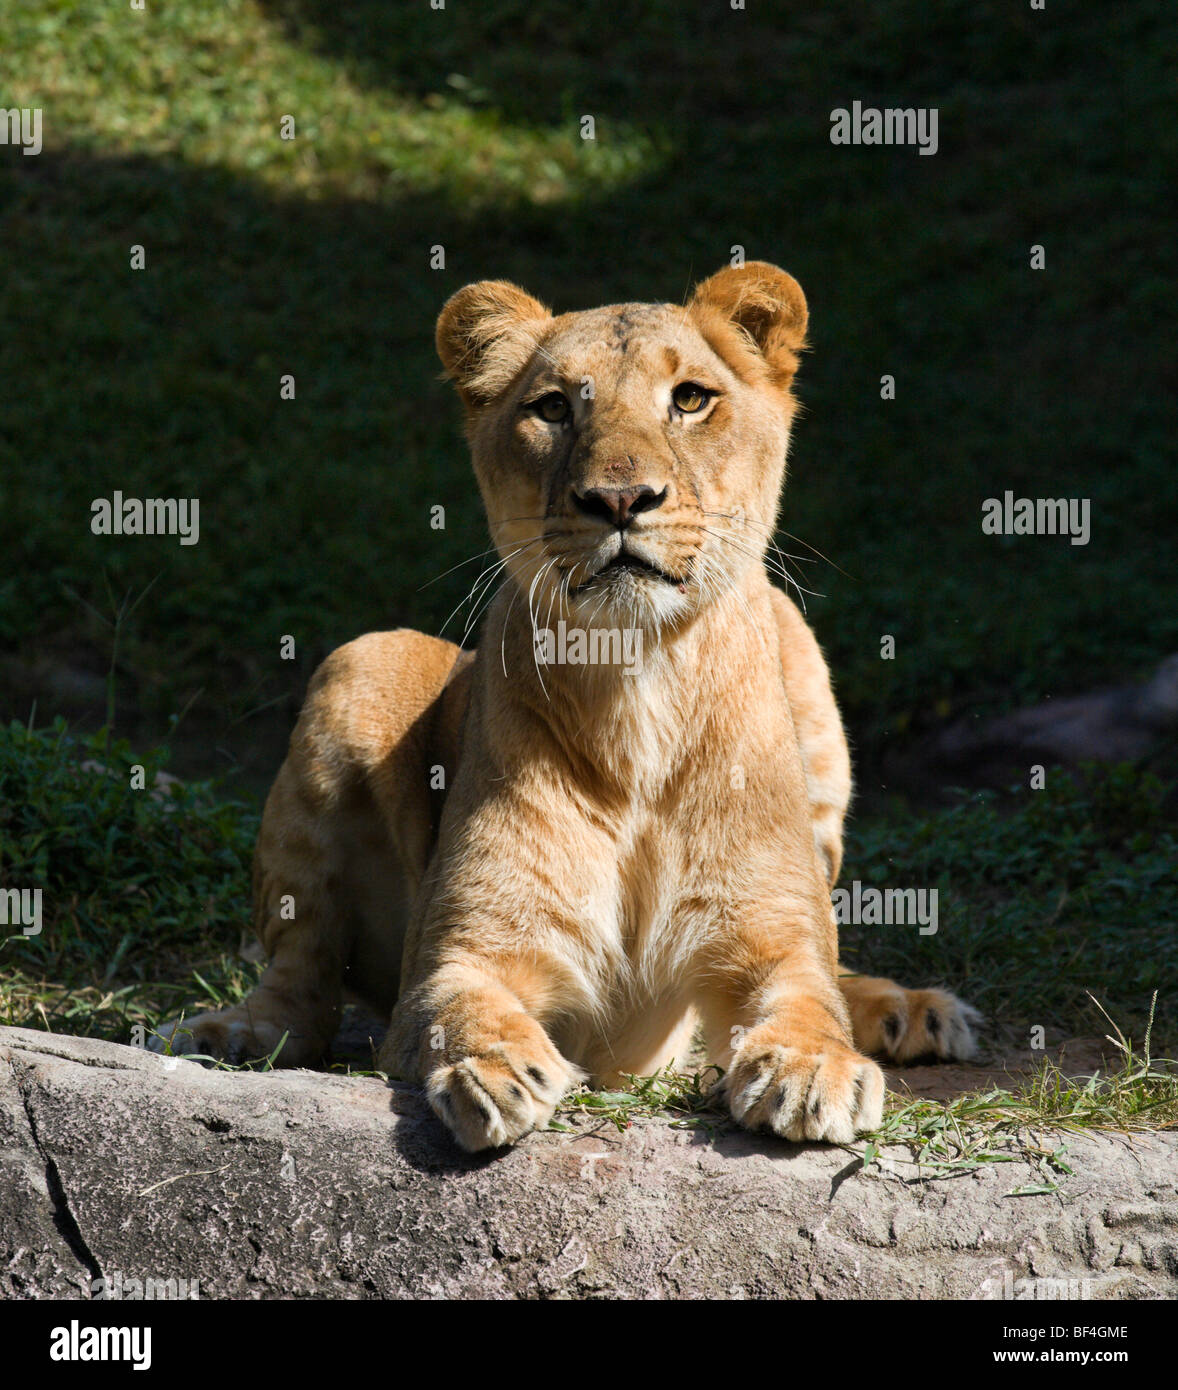 Jeune lionne (Panthera leo), Bord de l'Afrique, Busch Gardens, Tampa, Florida, USA Banque D'Images